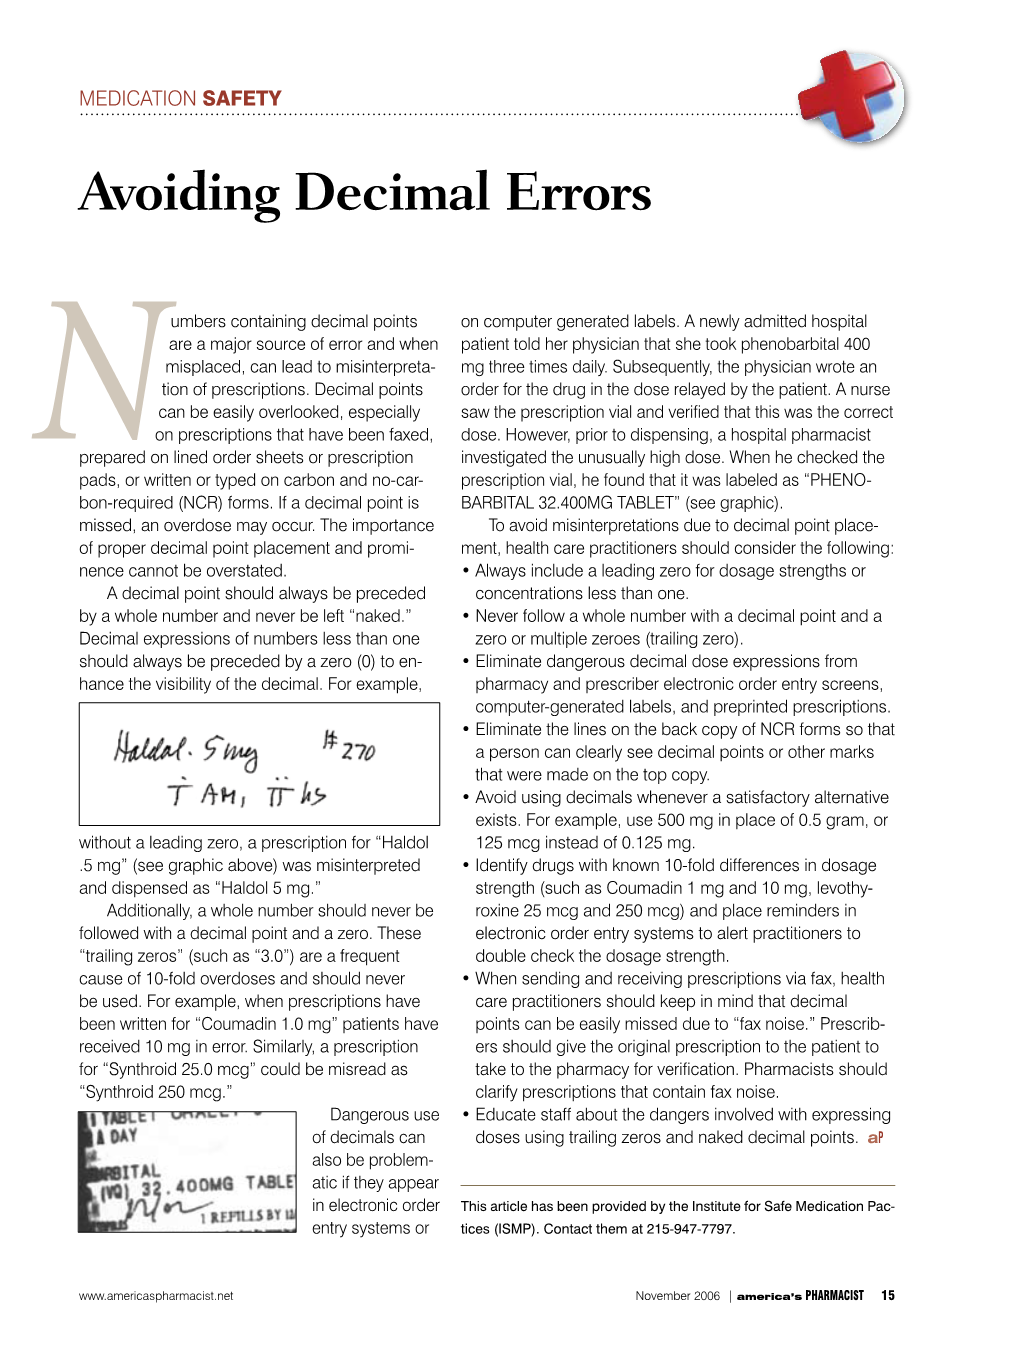 Avoiding Decimal Errors—November 2006